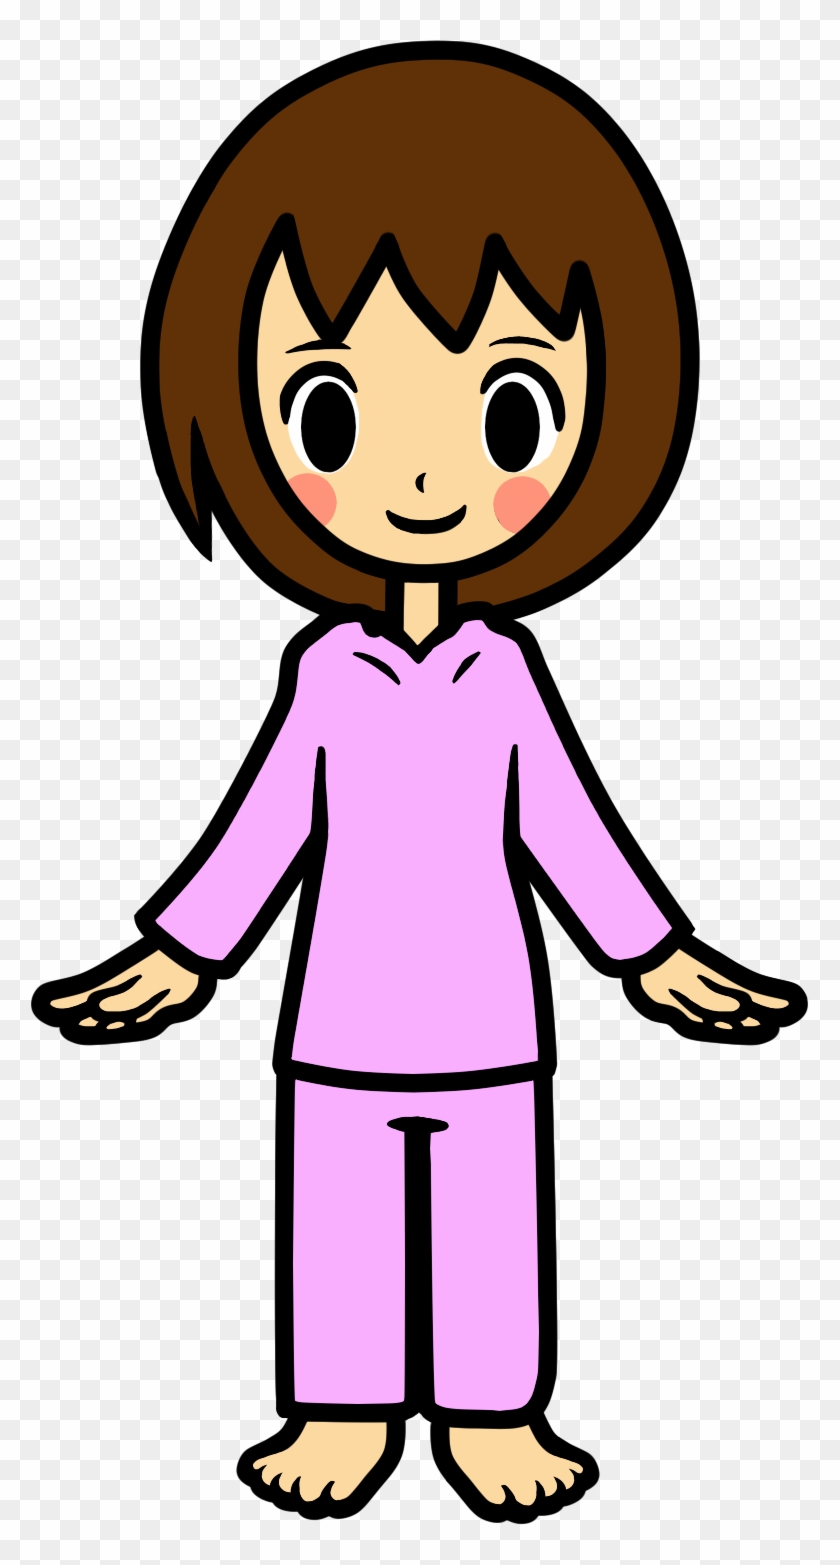 Pajamas Boy Girl Clothing Clip Art - Pajamas Boy Girl Clothing Clip Art #496557